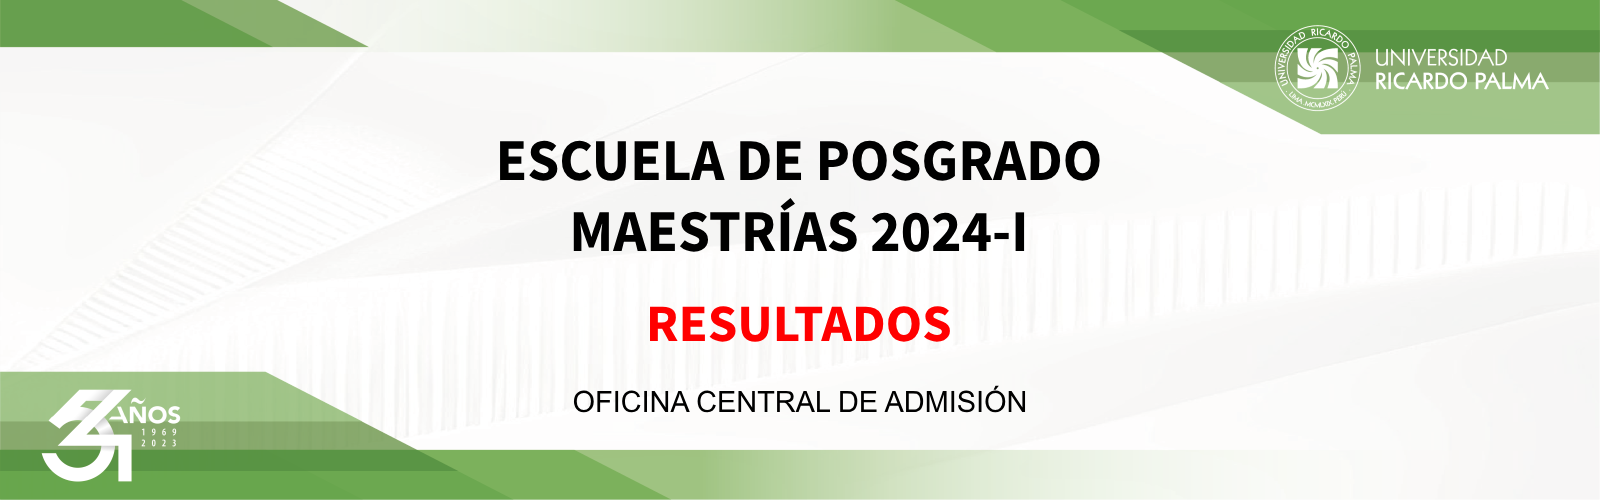 RESULTADOS_ESCUELA_POSGRADO_MAESTRIAS_2024-I.png